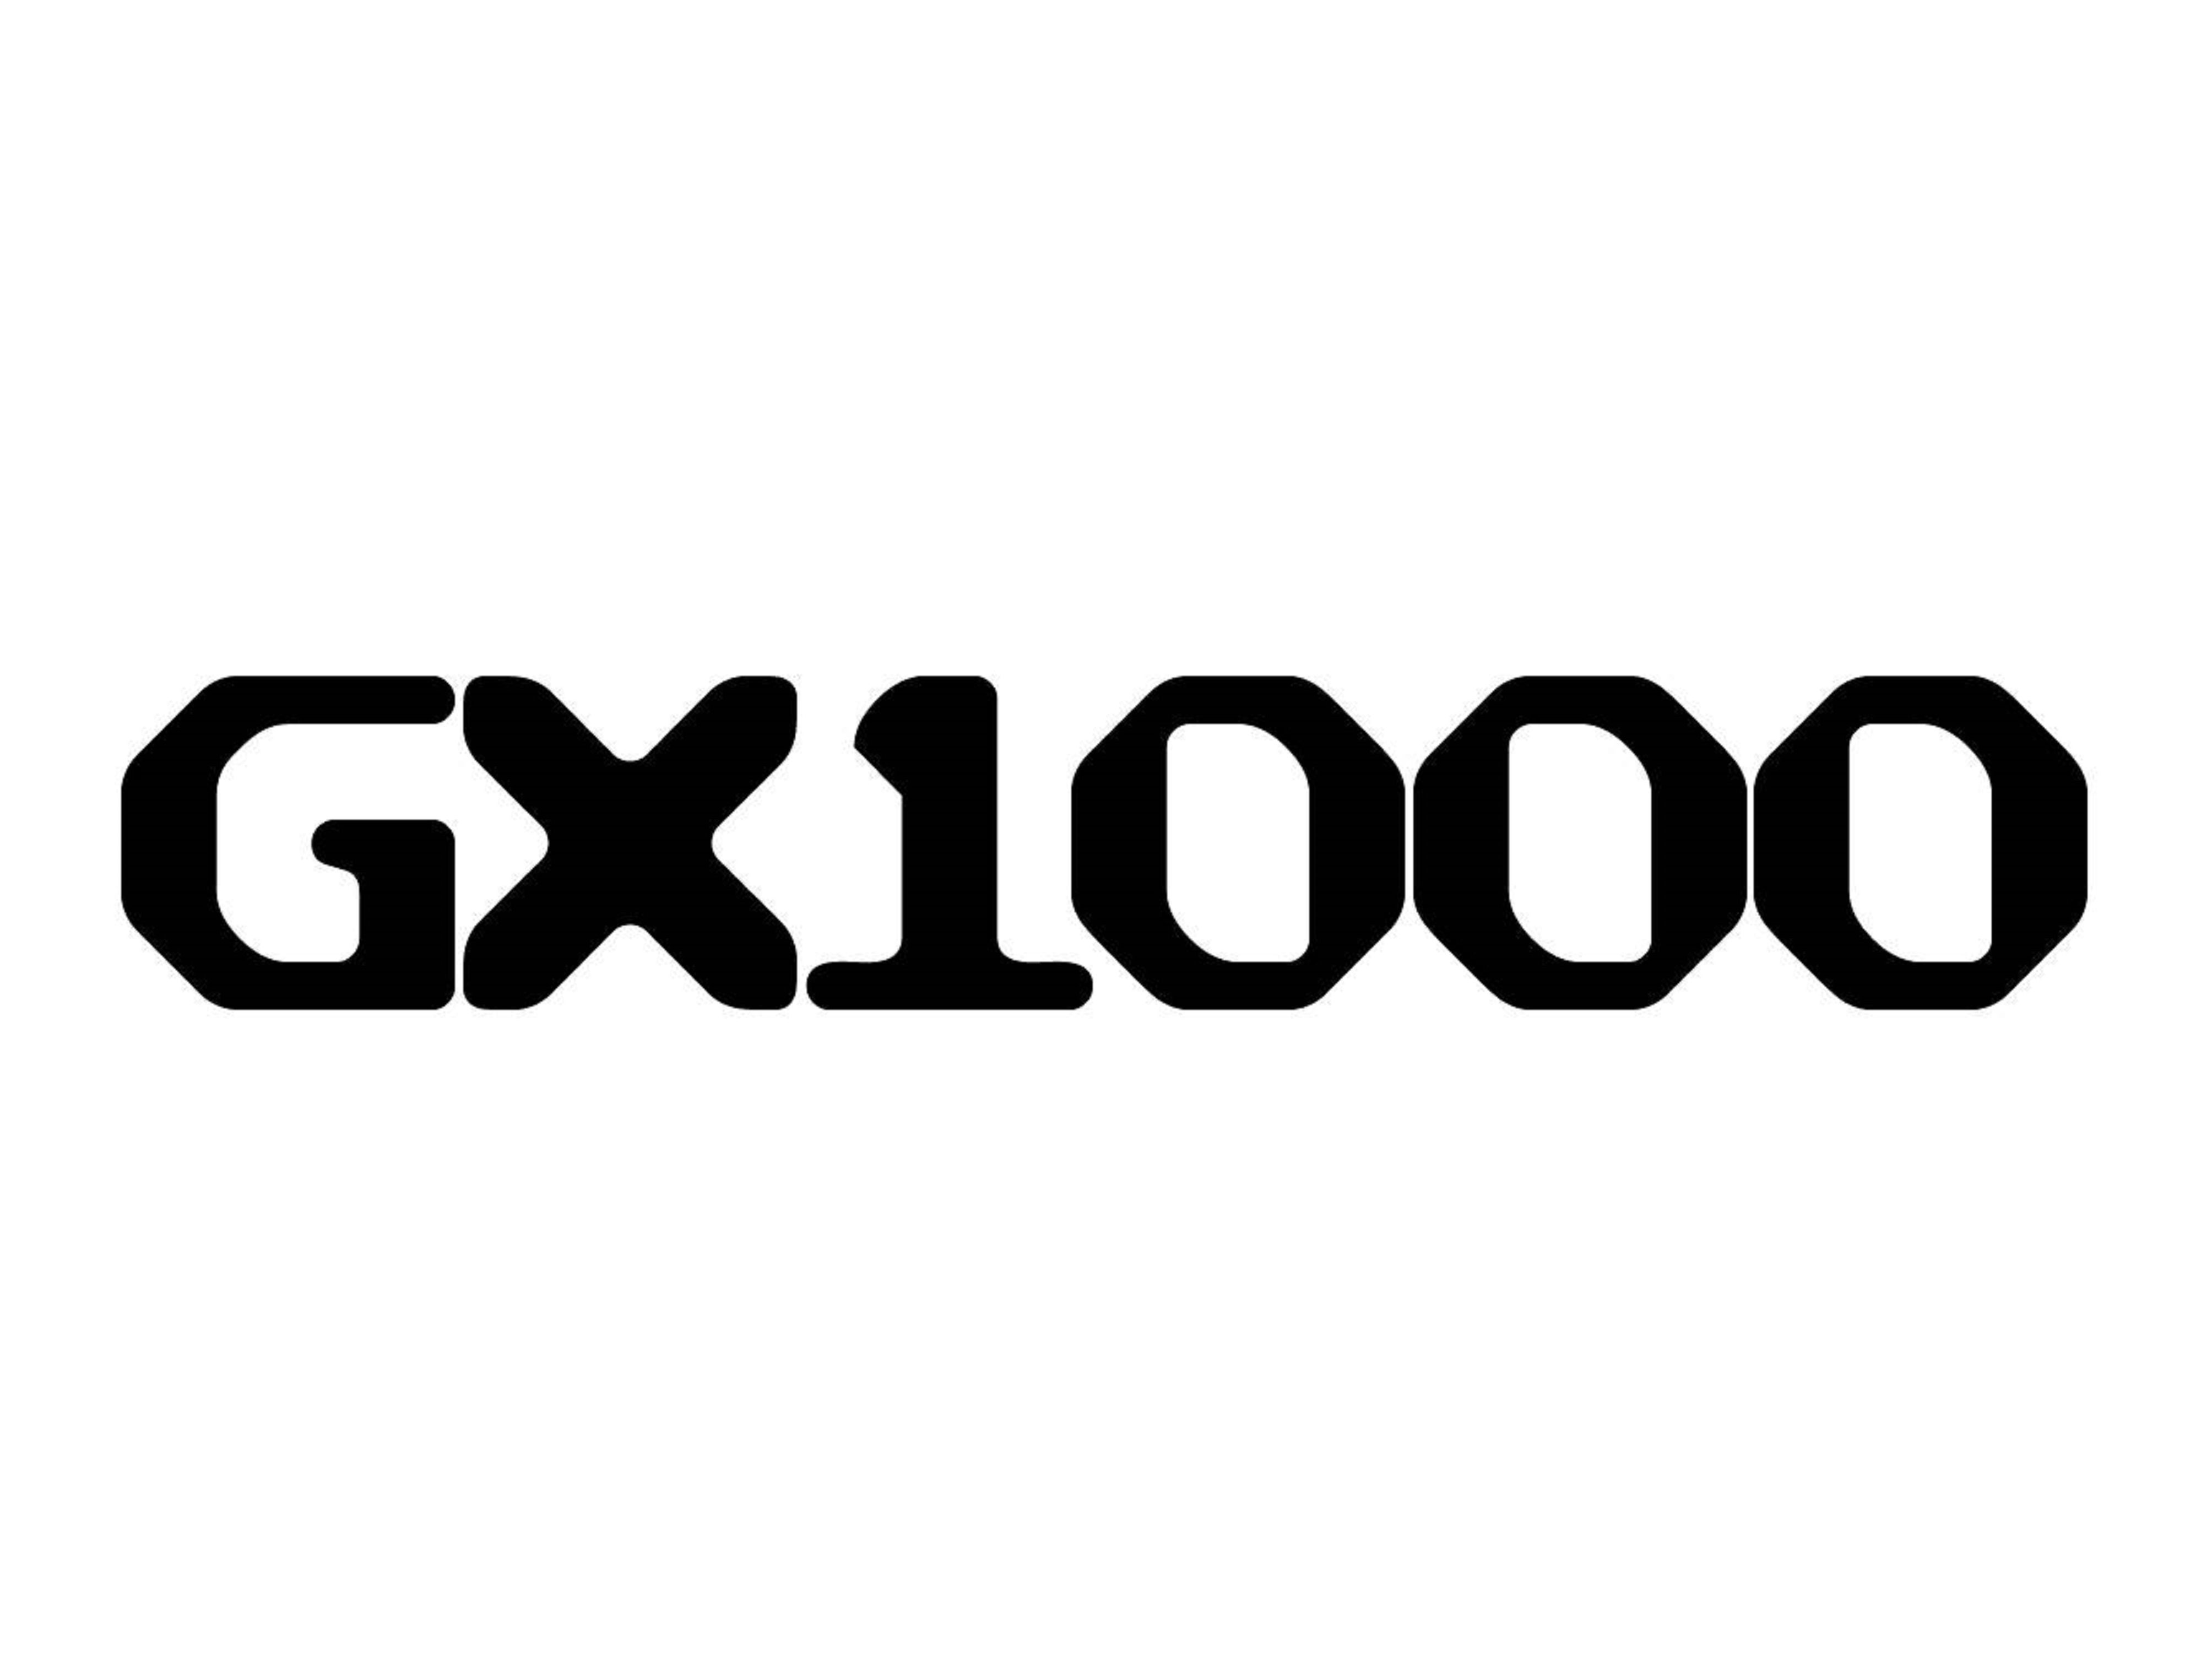 CubeSkateshop.sk prináša značku GX1000